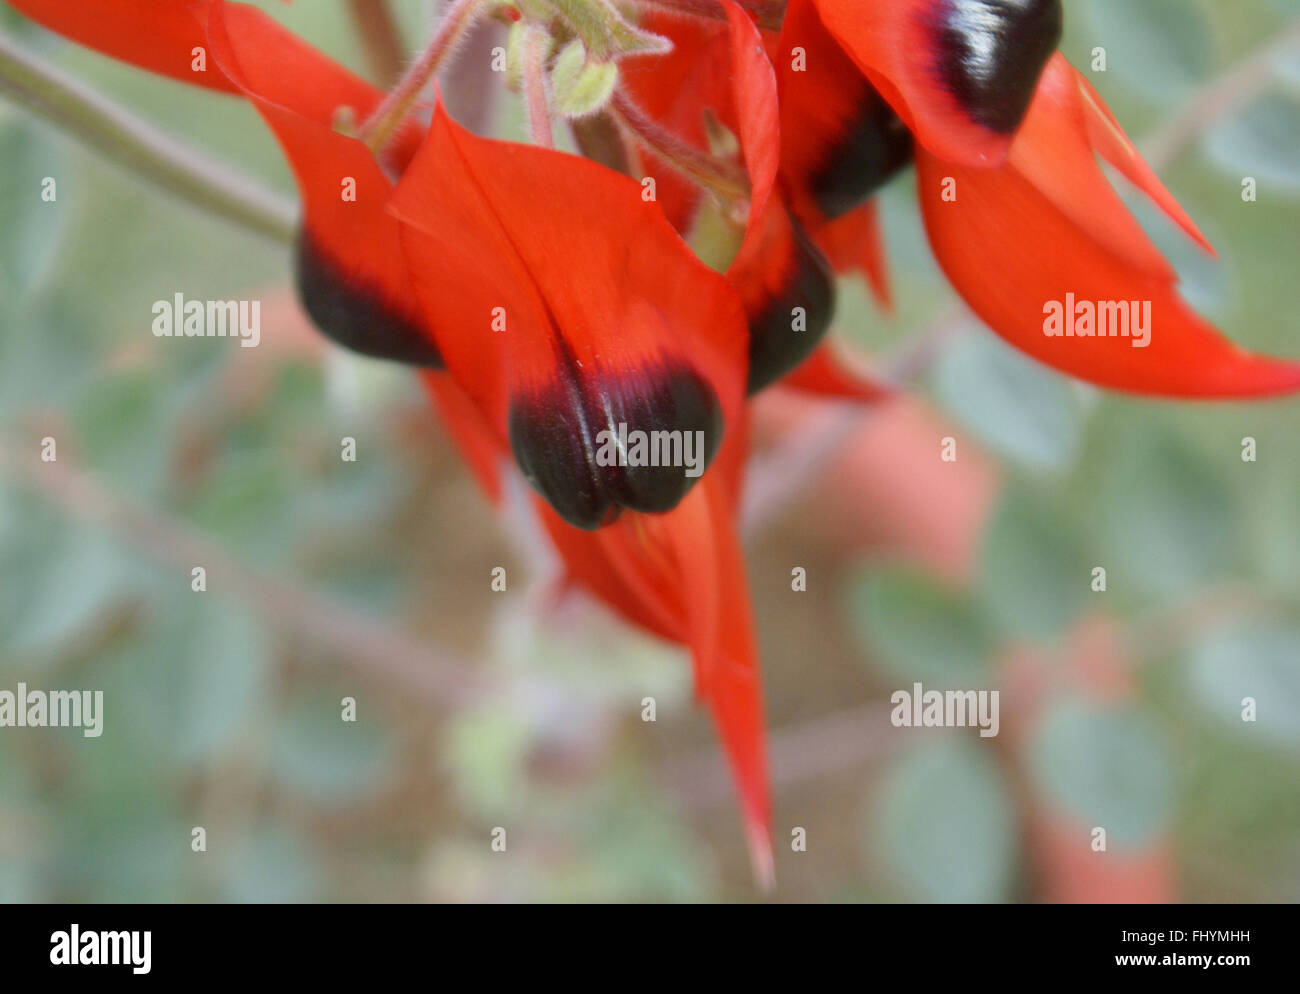 Swainsona formosa, Sturt's Desert Pea ornamentales, con flores de color rojo brillante estrecho con rebordes negros picuda Foto de stock